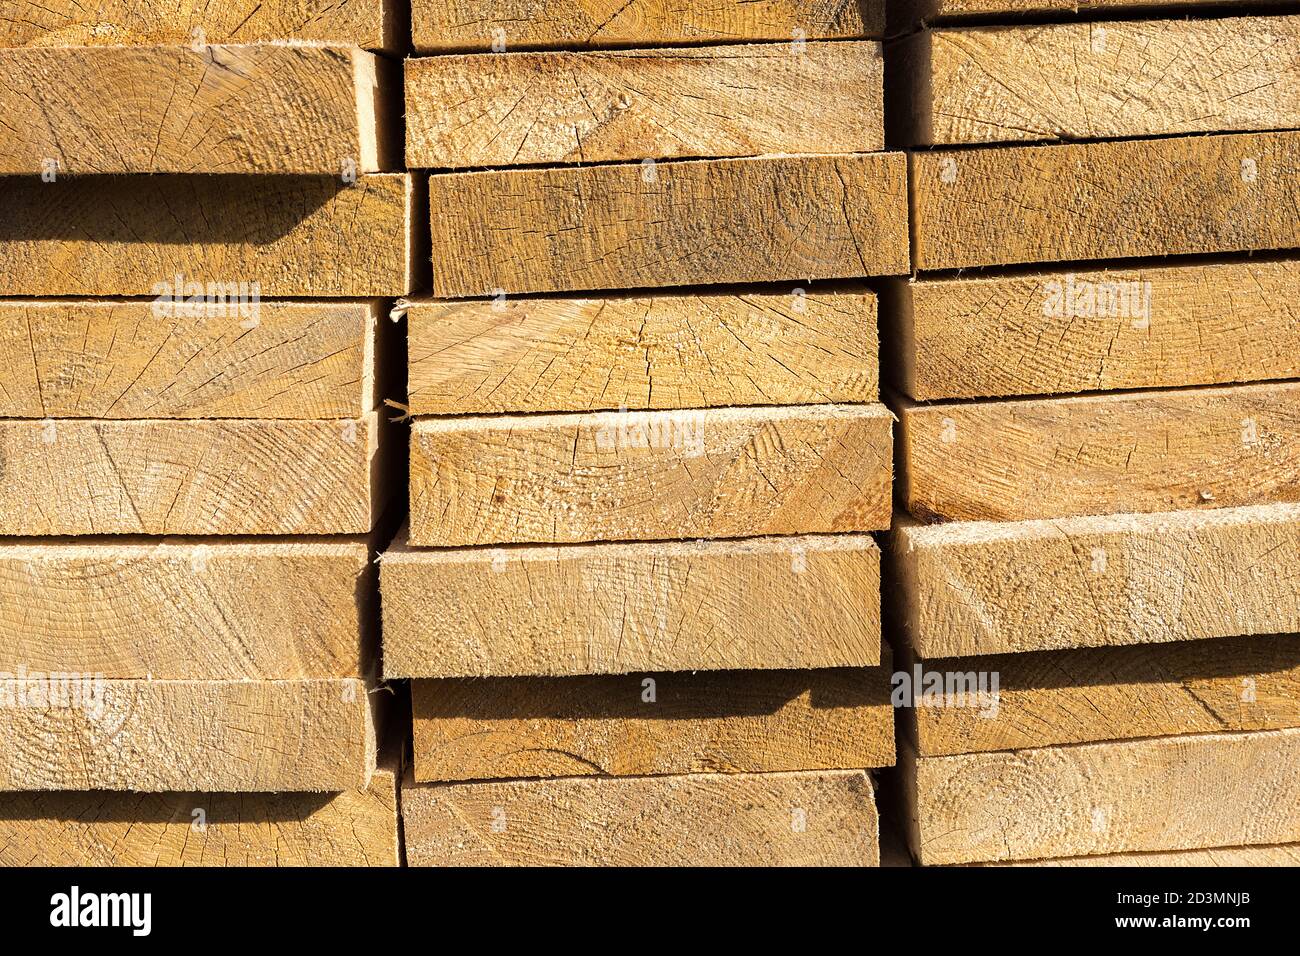 Les planches en bois sont stockées à l'extérieur. Texture du bois Banque D'Images